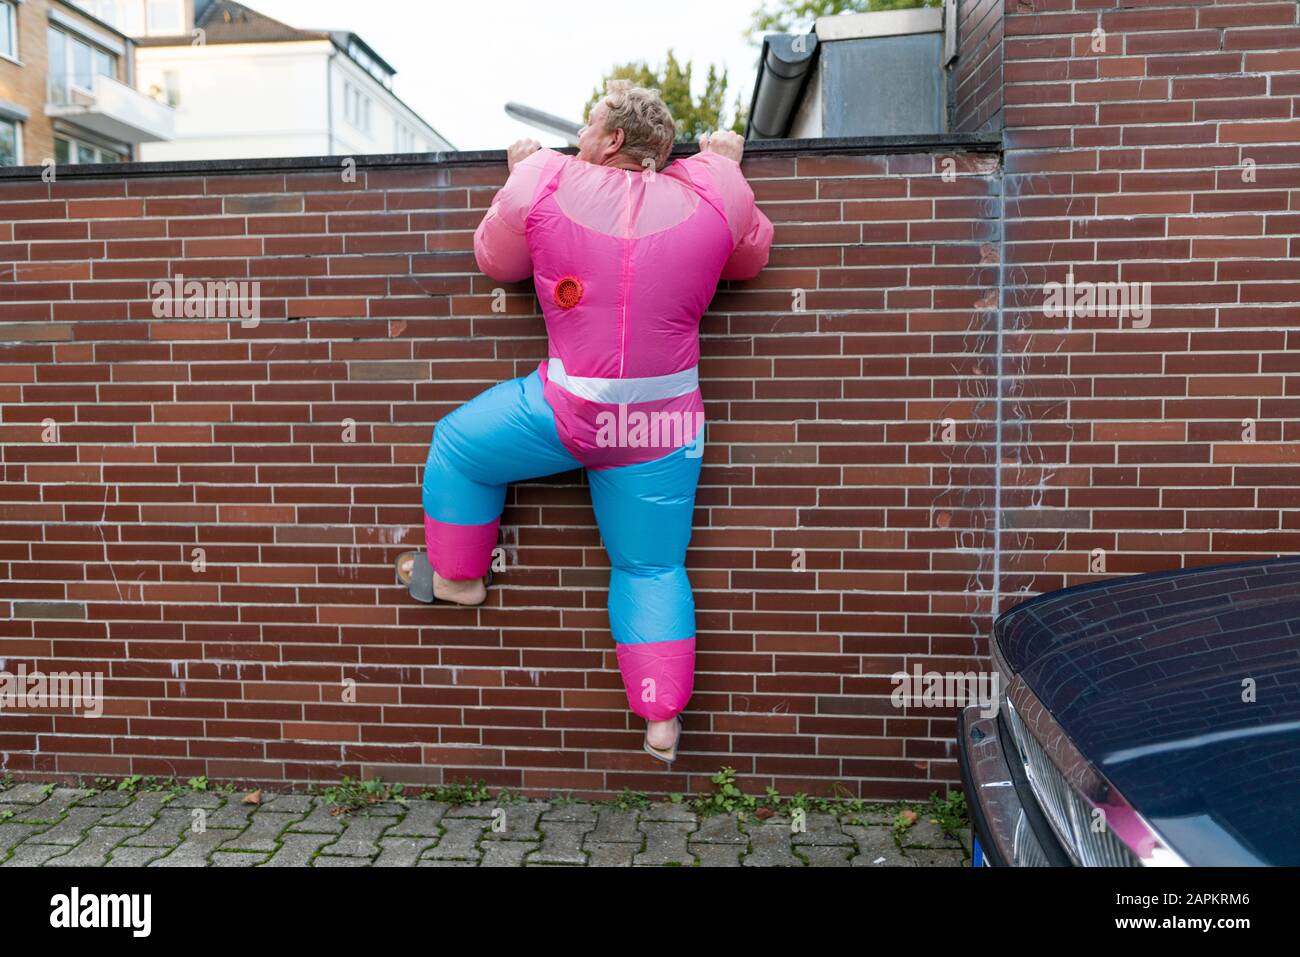 Mann mit rosafarbenem Bodybuilder-Kostüm, der über eine Wand klettert Stockfoto